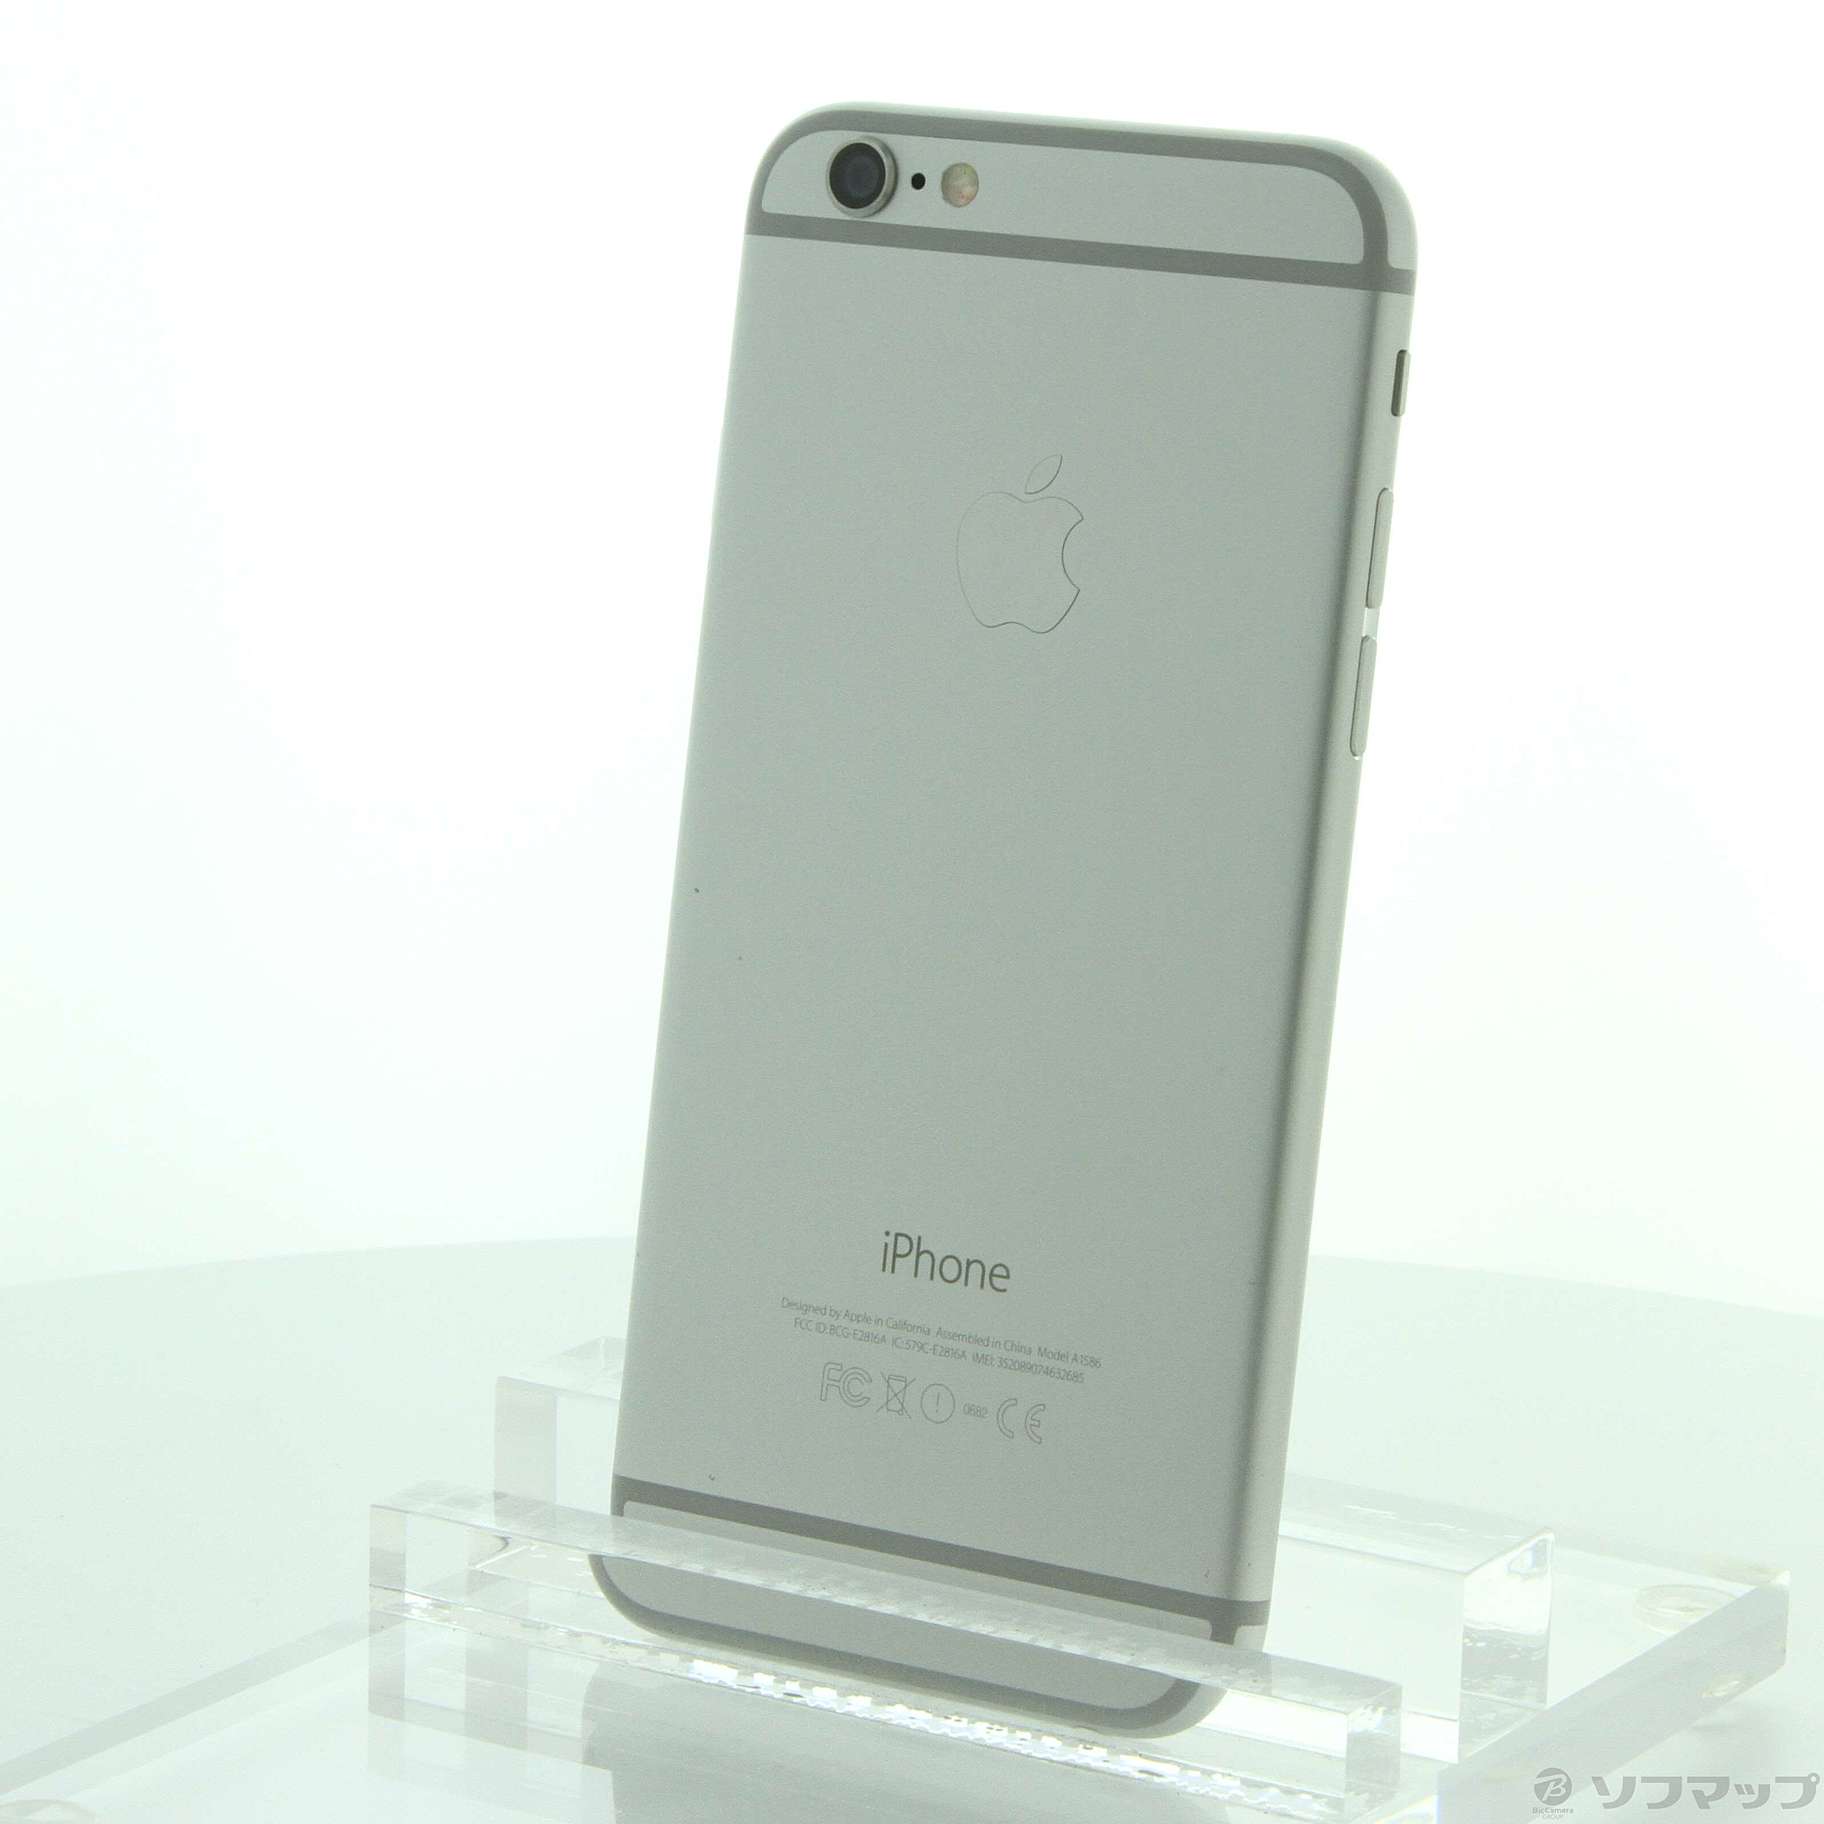 iPhone6 A1586 (MG482J/A) シルバー